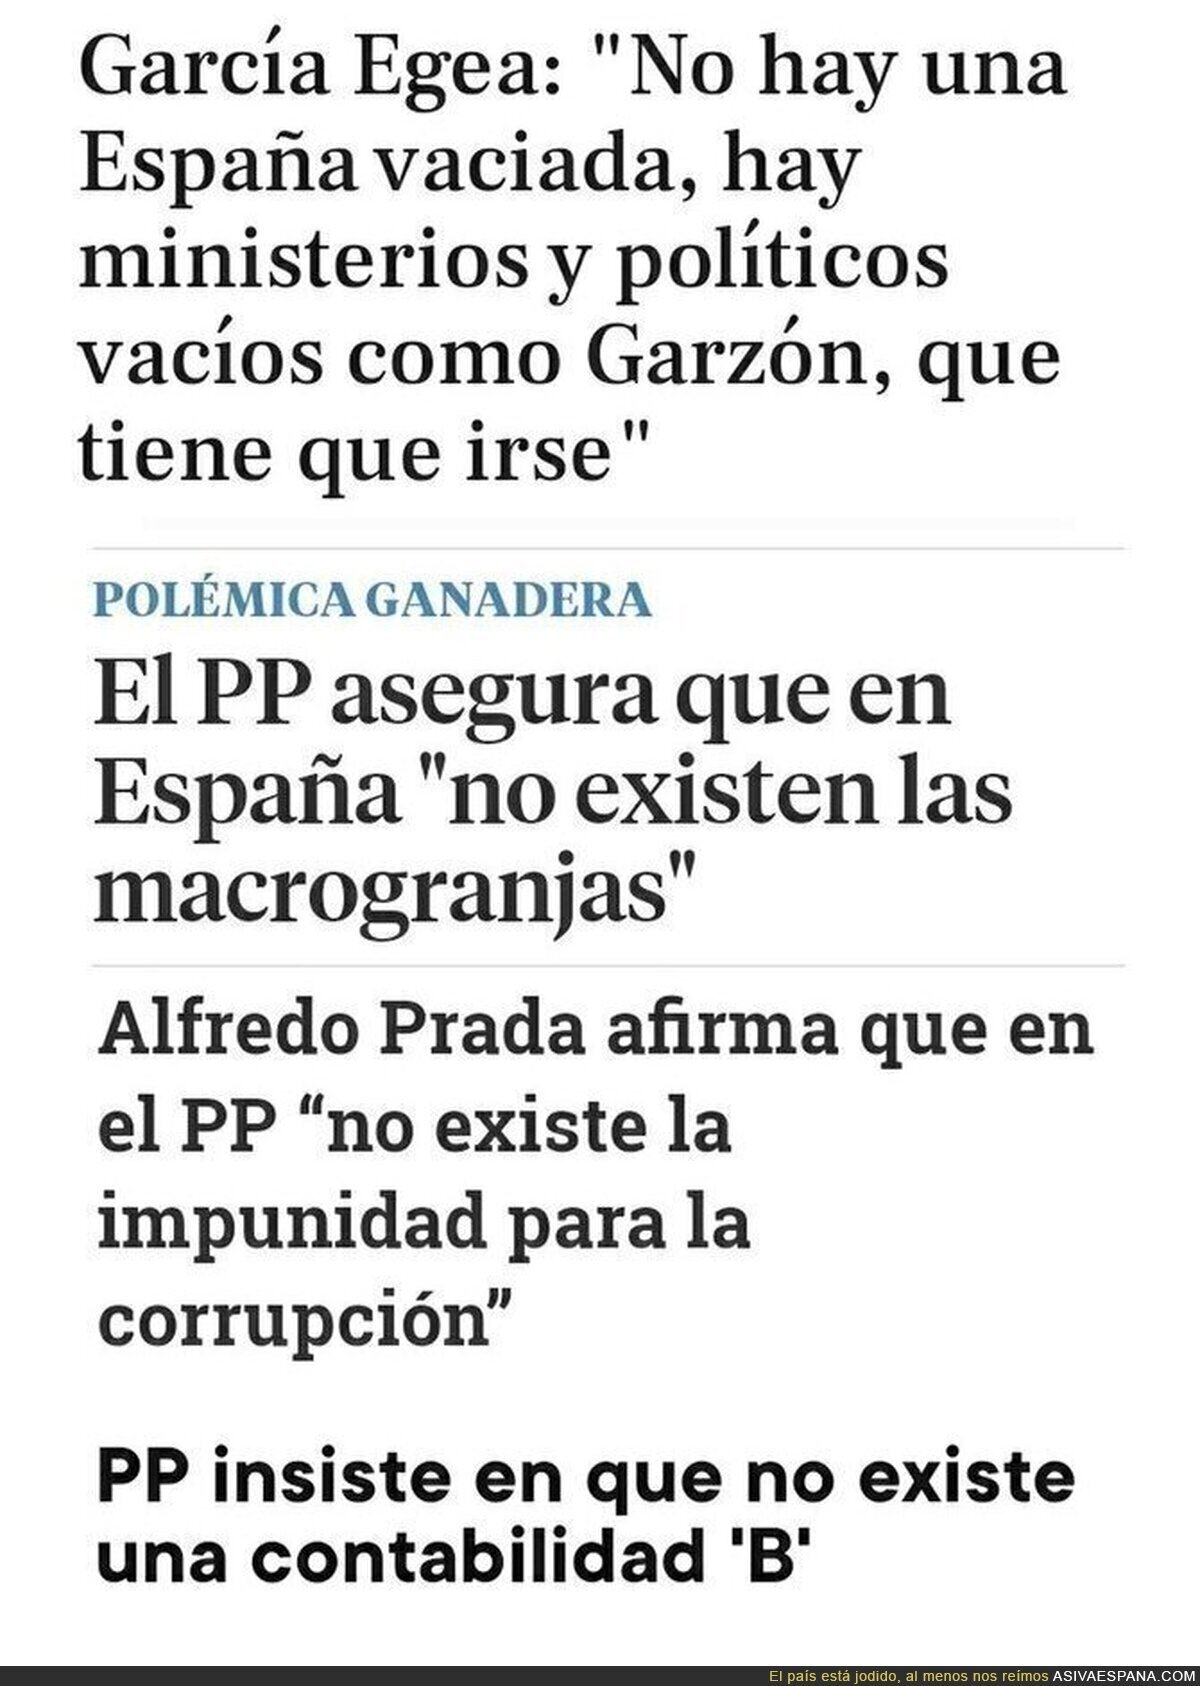 Cosas inexistentes en España según el PP